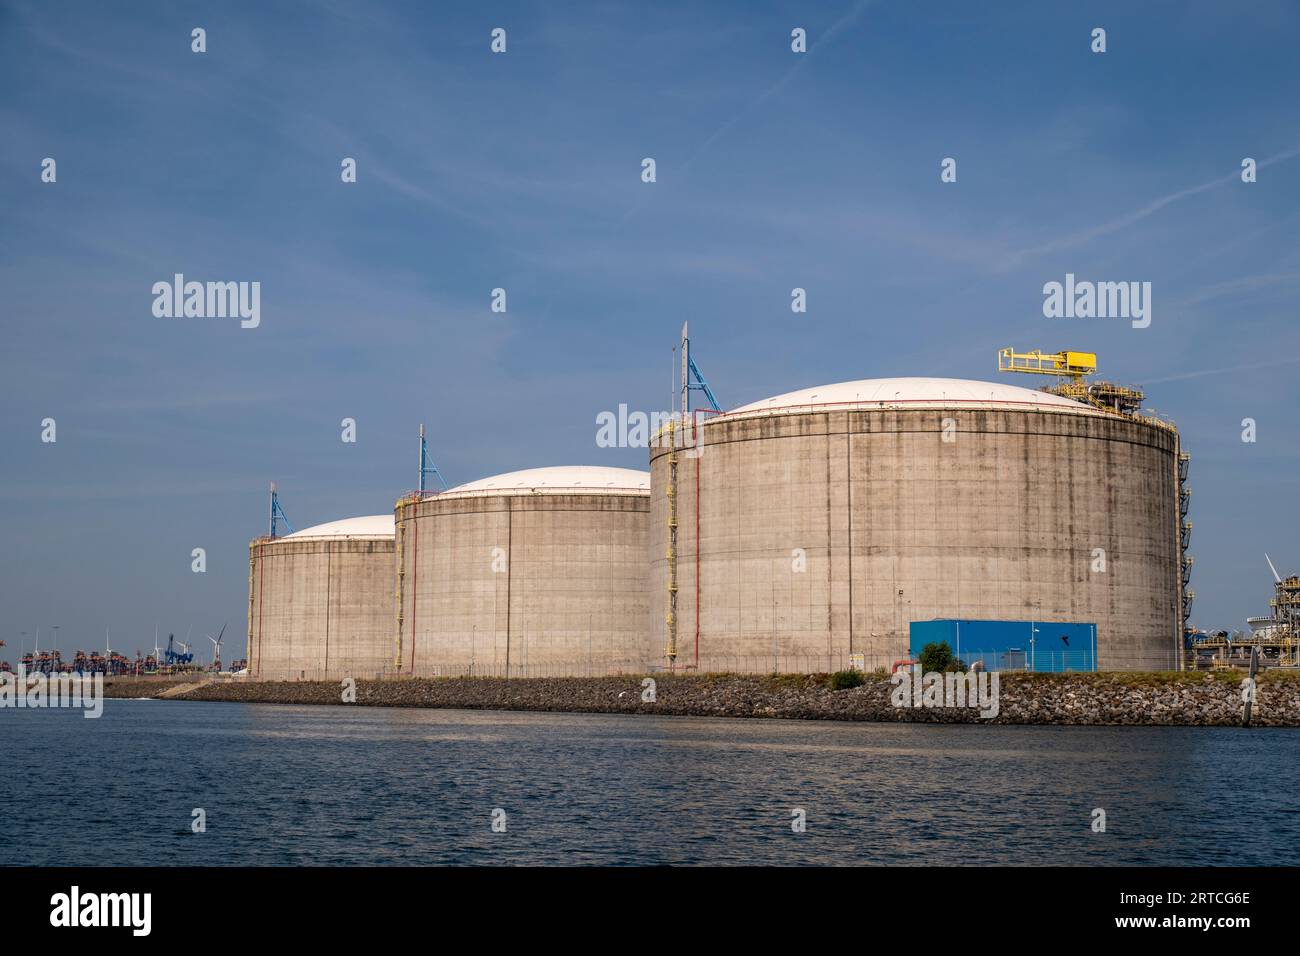 Speicherung von Flüssiggas. LNG- oder LPG-Gasanlage. Lagertanks für Flüssiggas. Im Hafen von Toterdam. Niederlande Stockfoto